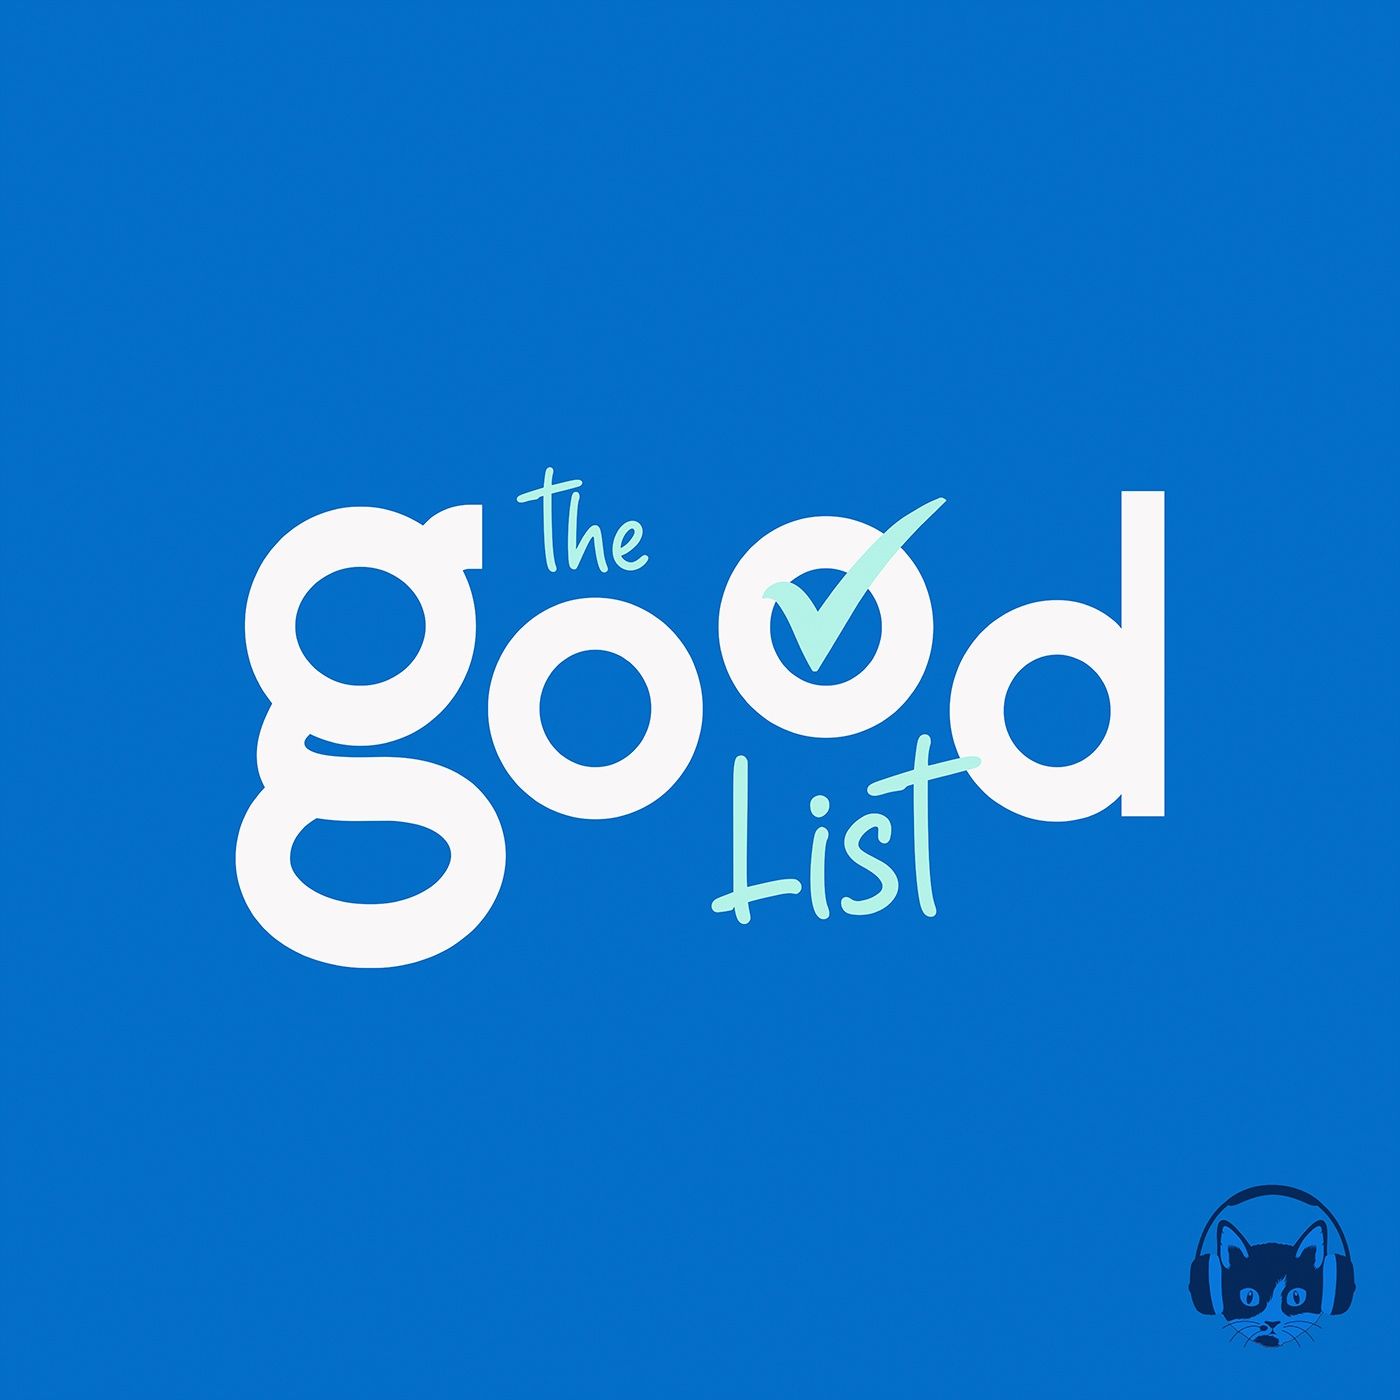 The Good List